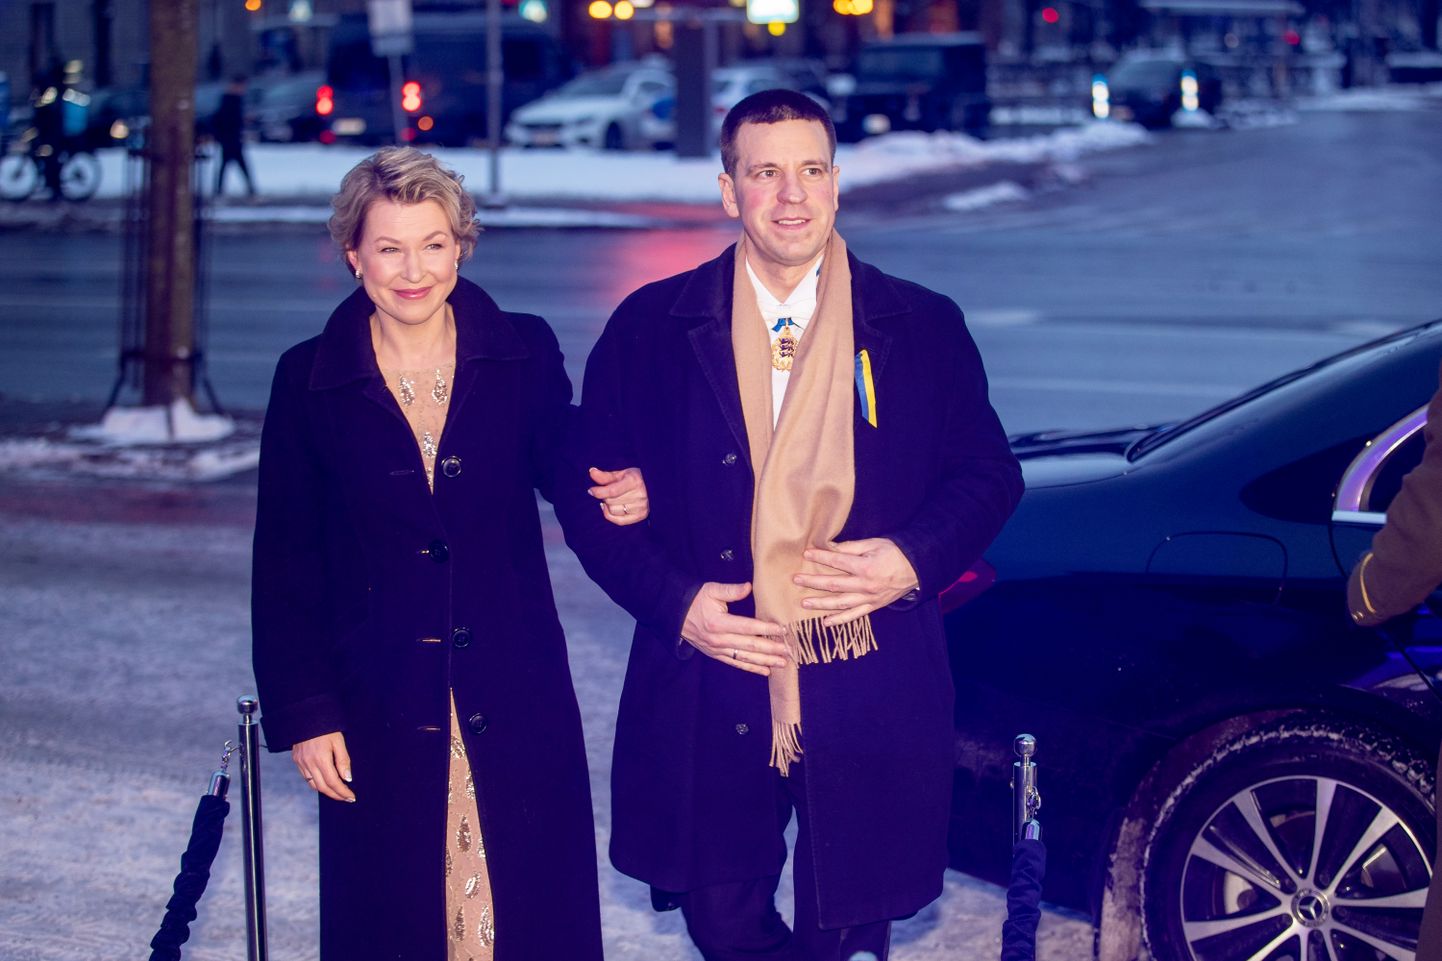 EV105 Estoniasse vastuvõtule saabujad. Jüri Ratas ja Karin Ratas.